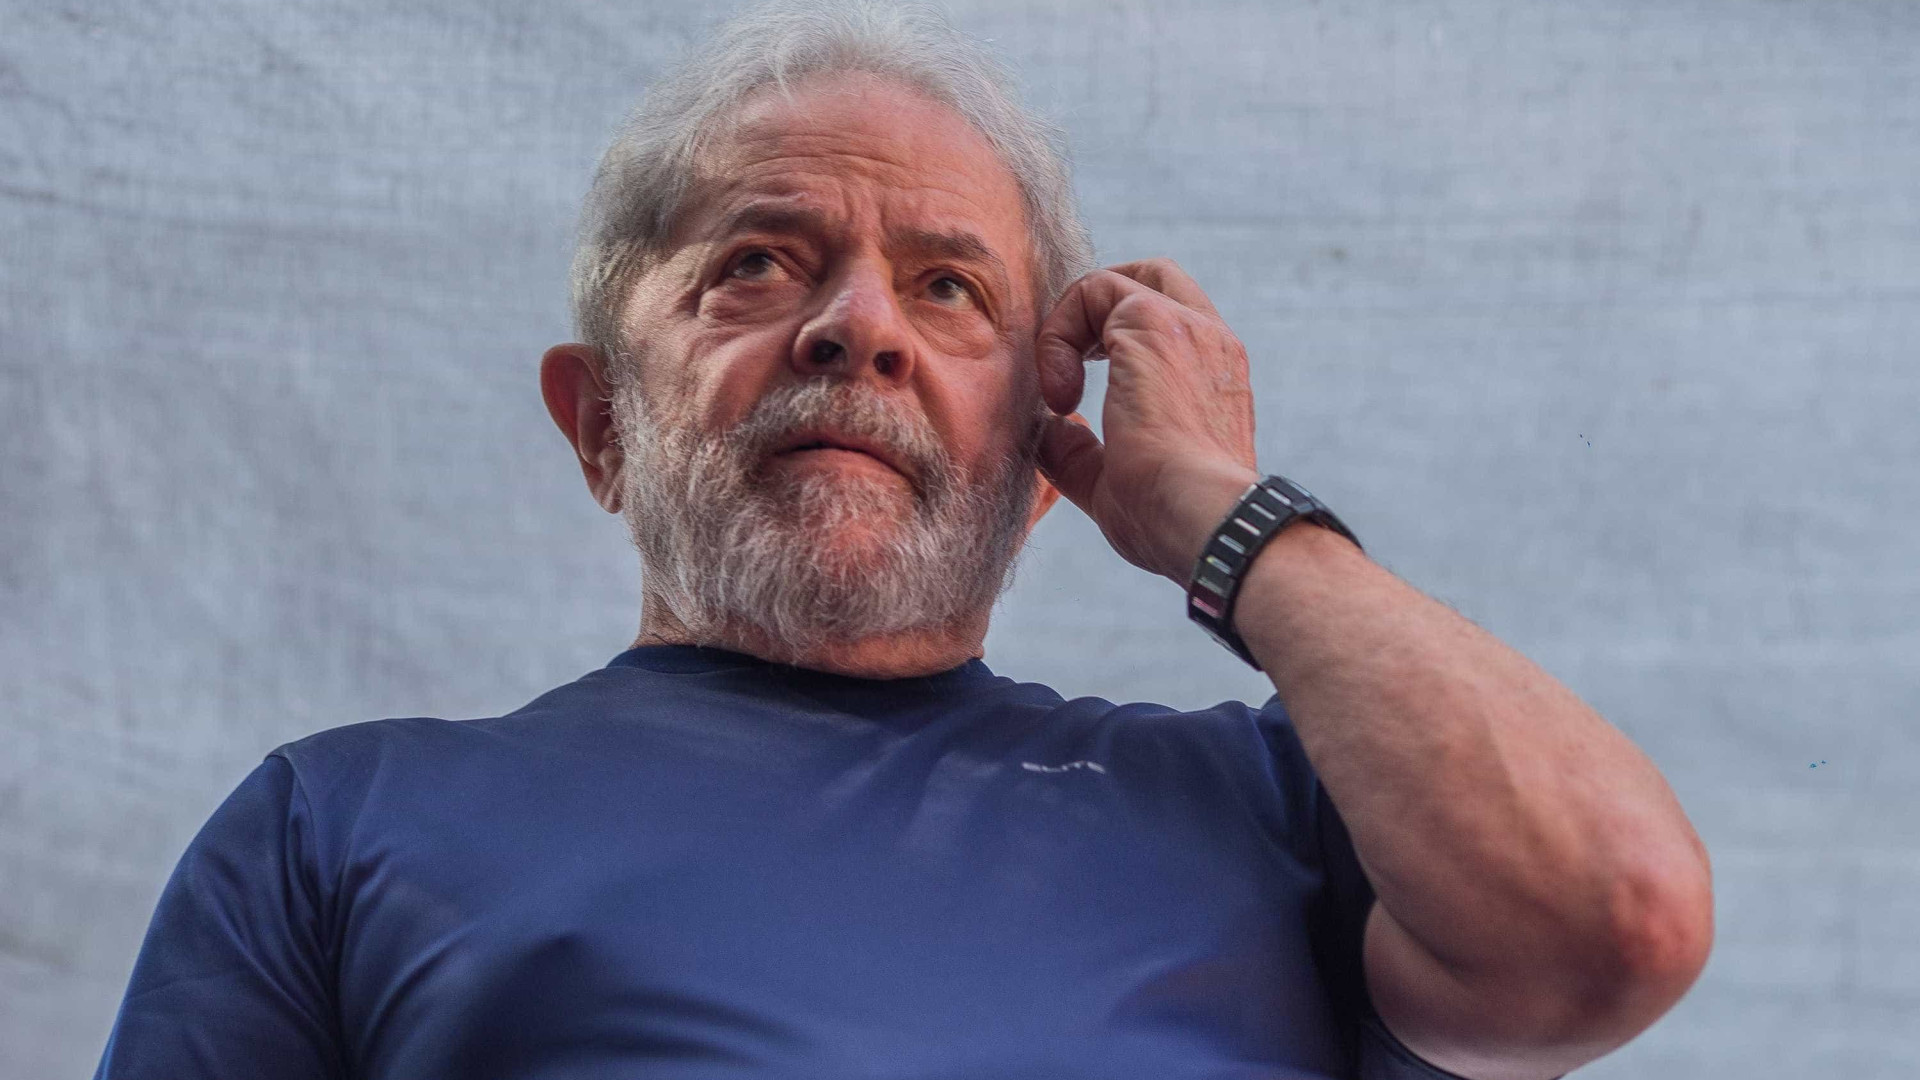 STF impediu violência contra Lula e está quer justiça, afirma defesa